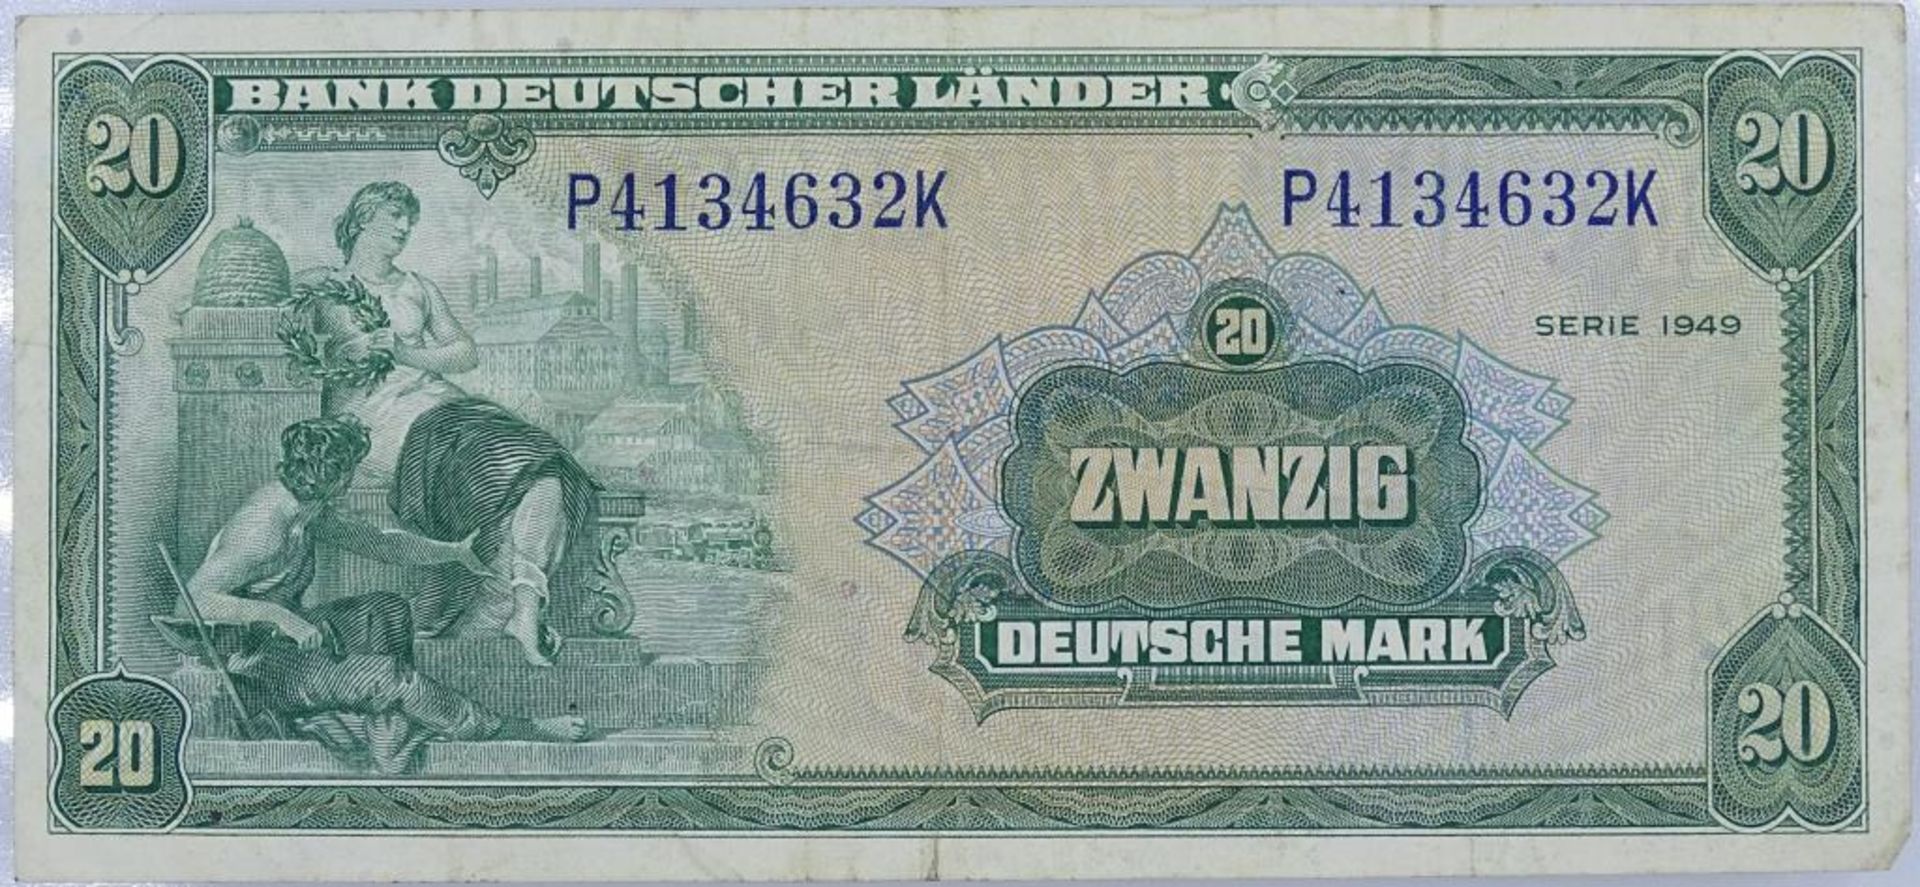 20 Deutsche Mark - 1949 - Bank Deutscher Länder, P4134632- - -22.61 % buyer's premium on the